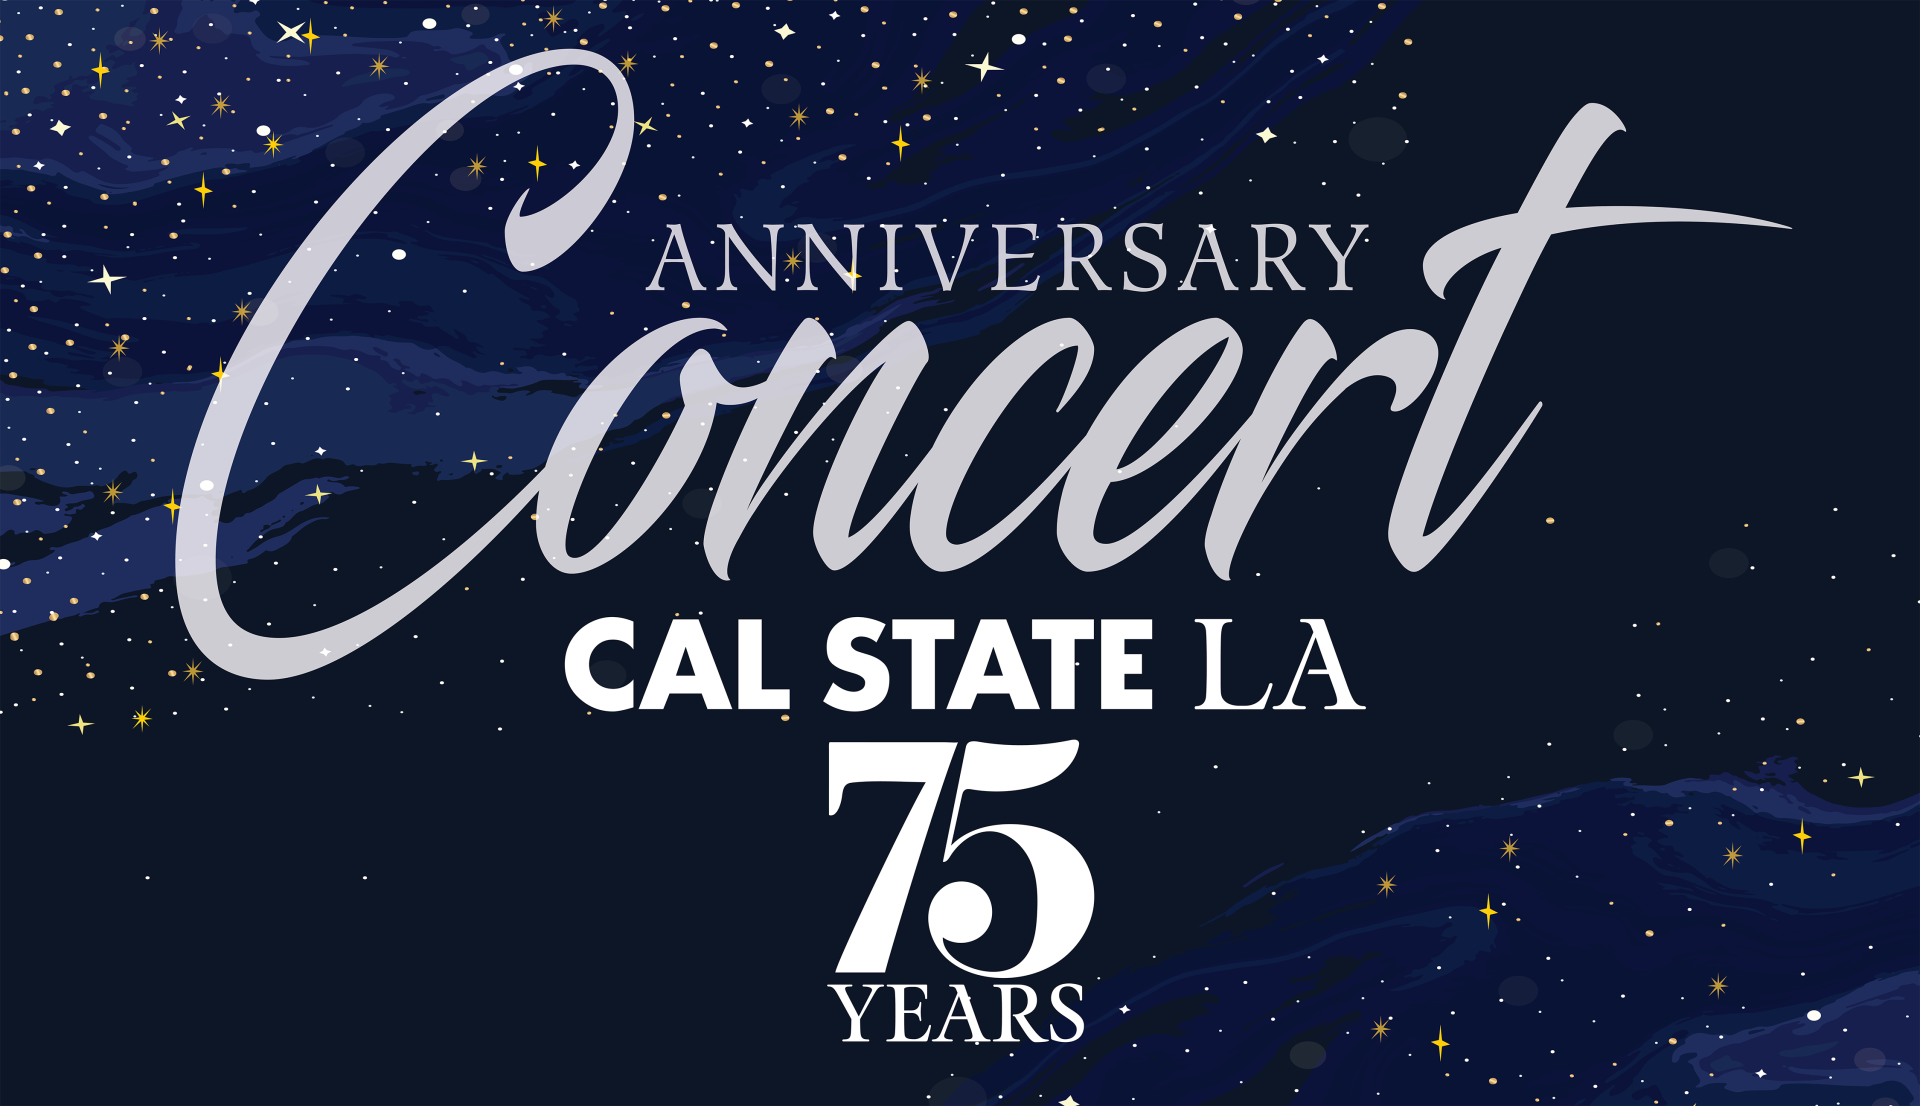 Cal State LA 75th Anniversary Concert